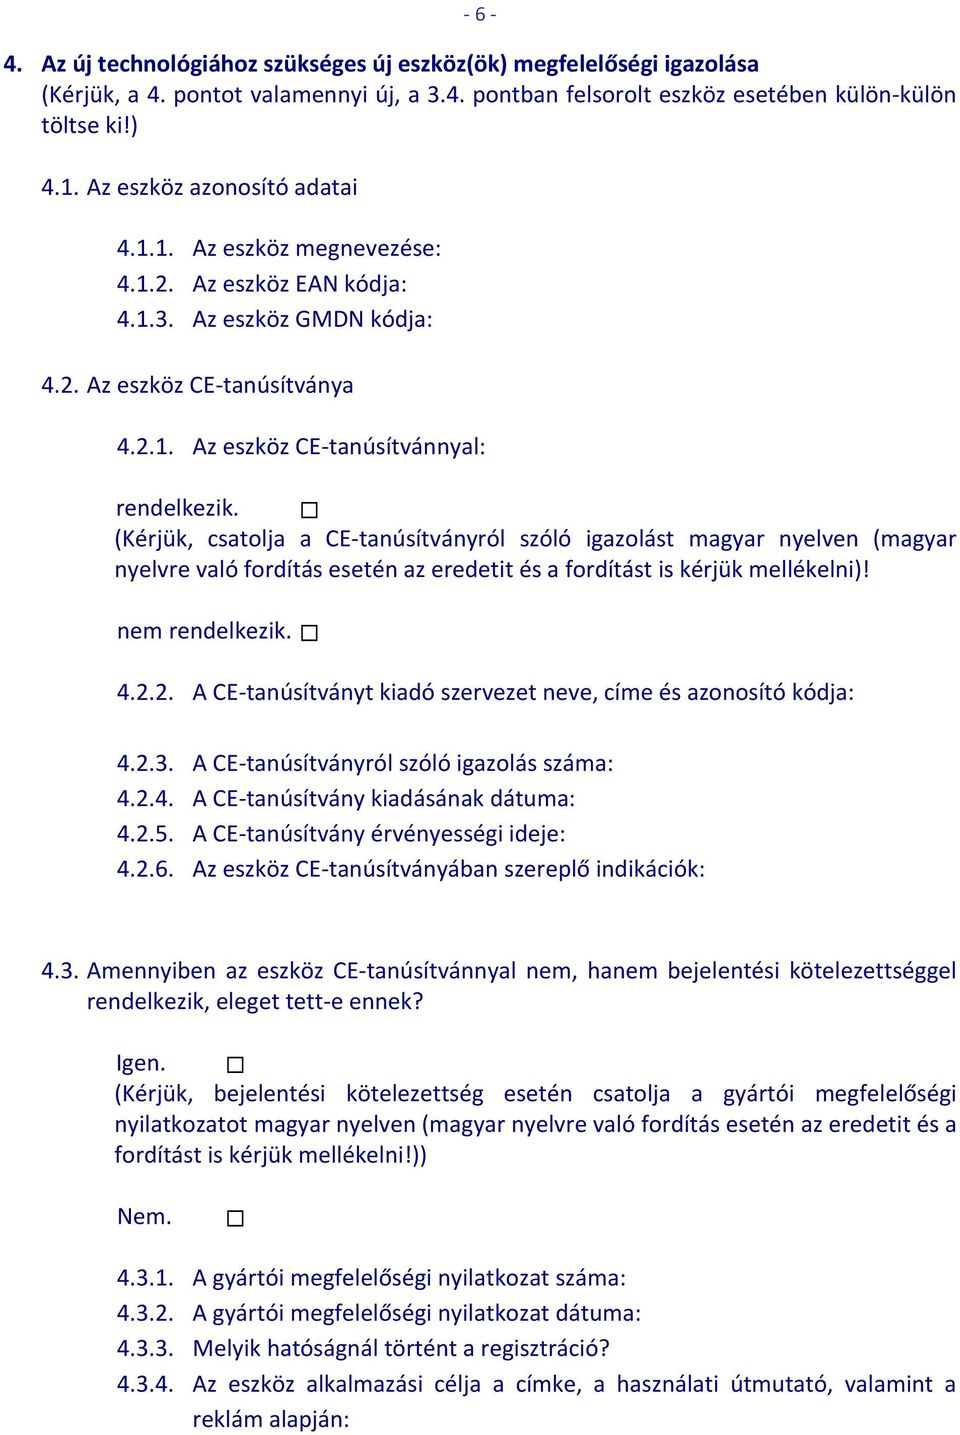 (Kérjük, csatolja a CE tanúsítványról szóló igazolást magyar nyelven (magyar nyelvre való fordítás esetén az eredetit és a fordítást is kérjük mellékelni)! nem rendelkezik. 4.2.